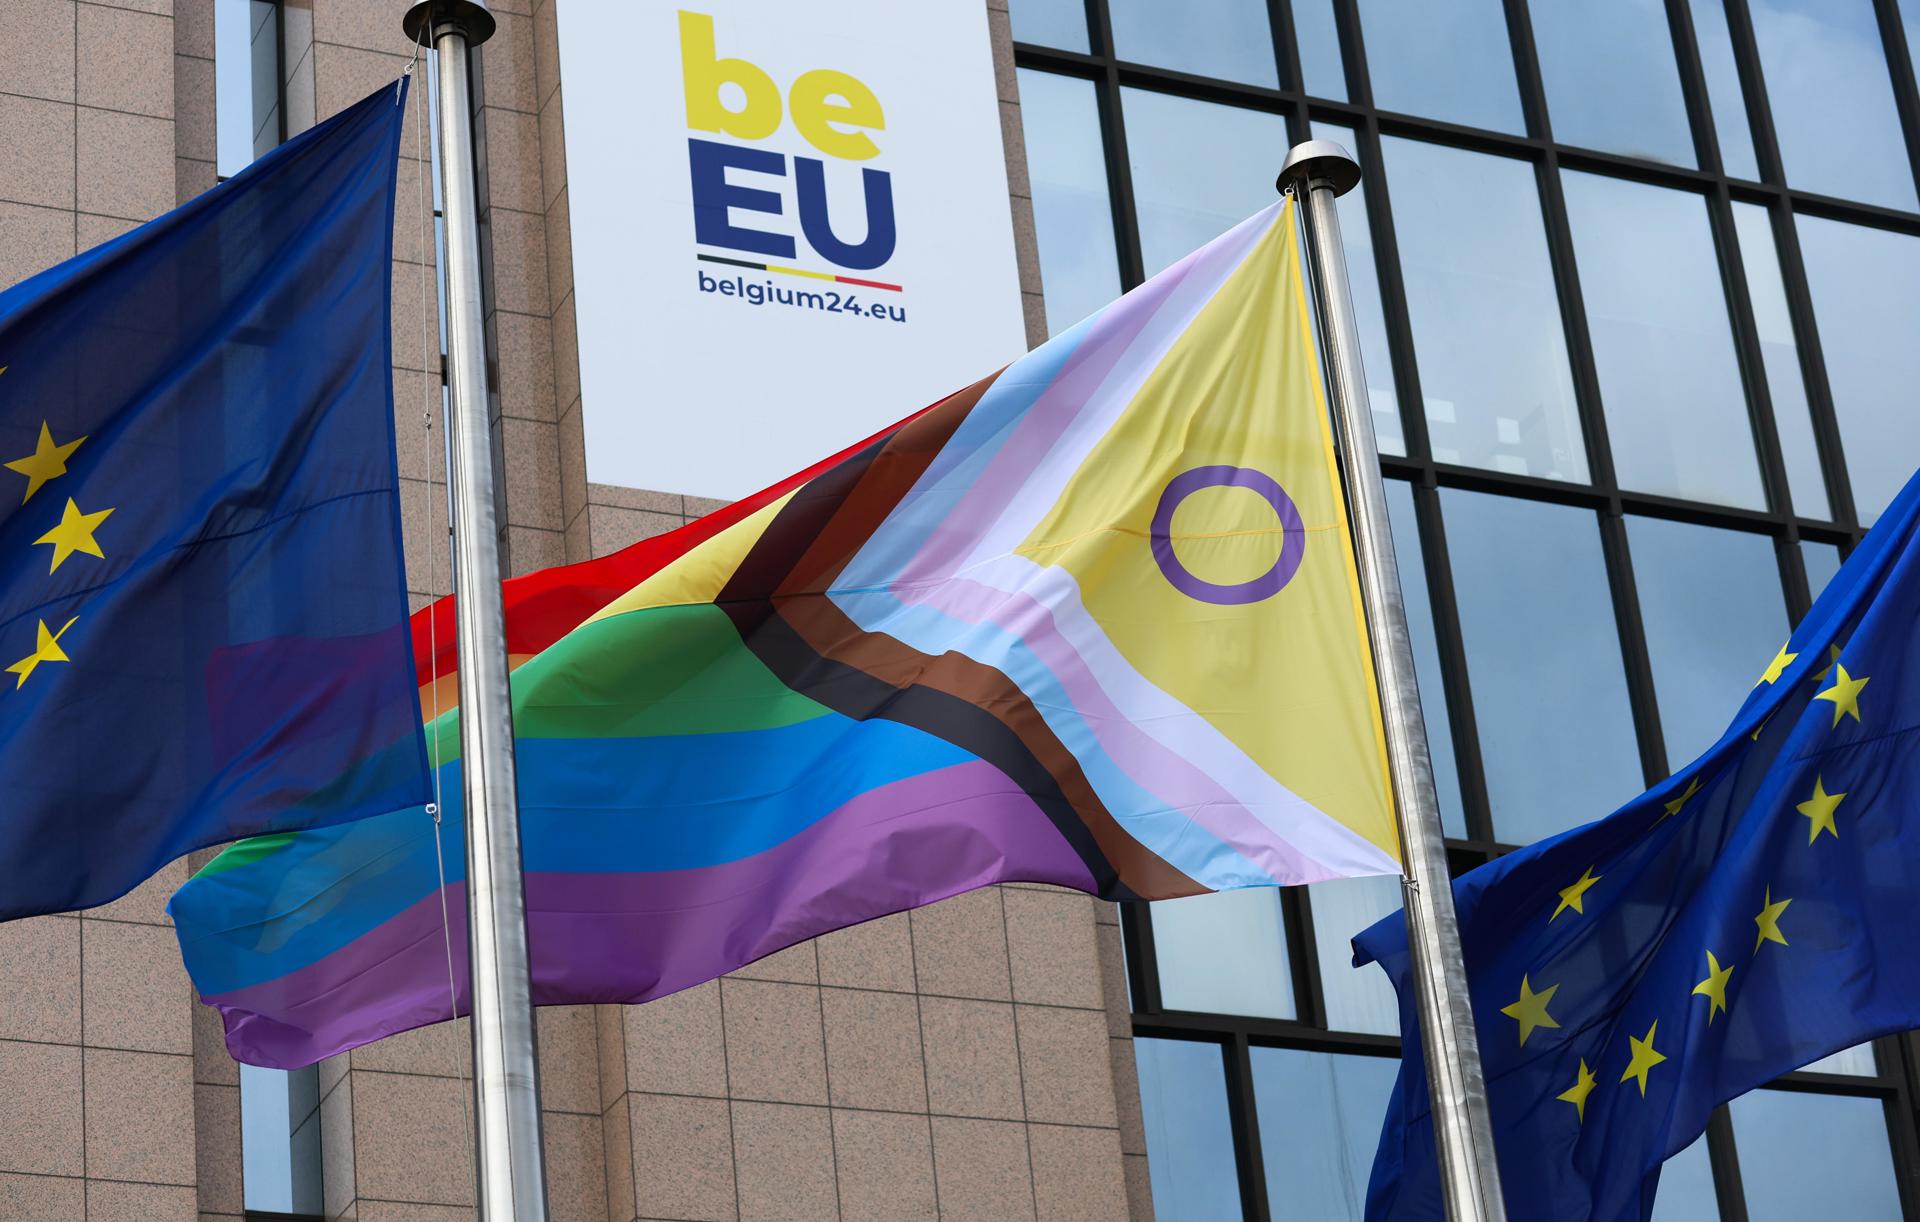 Nueve países de la Unión Europea se desmarcan de una declaración favorable a los derechos LGTBIQ